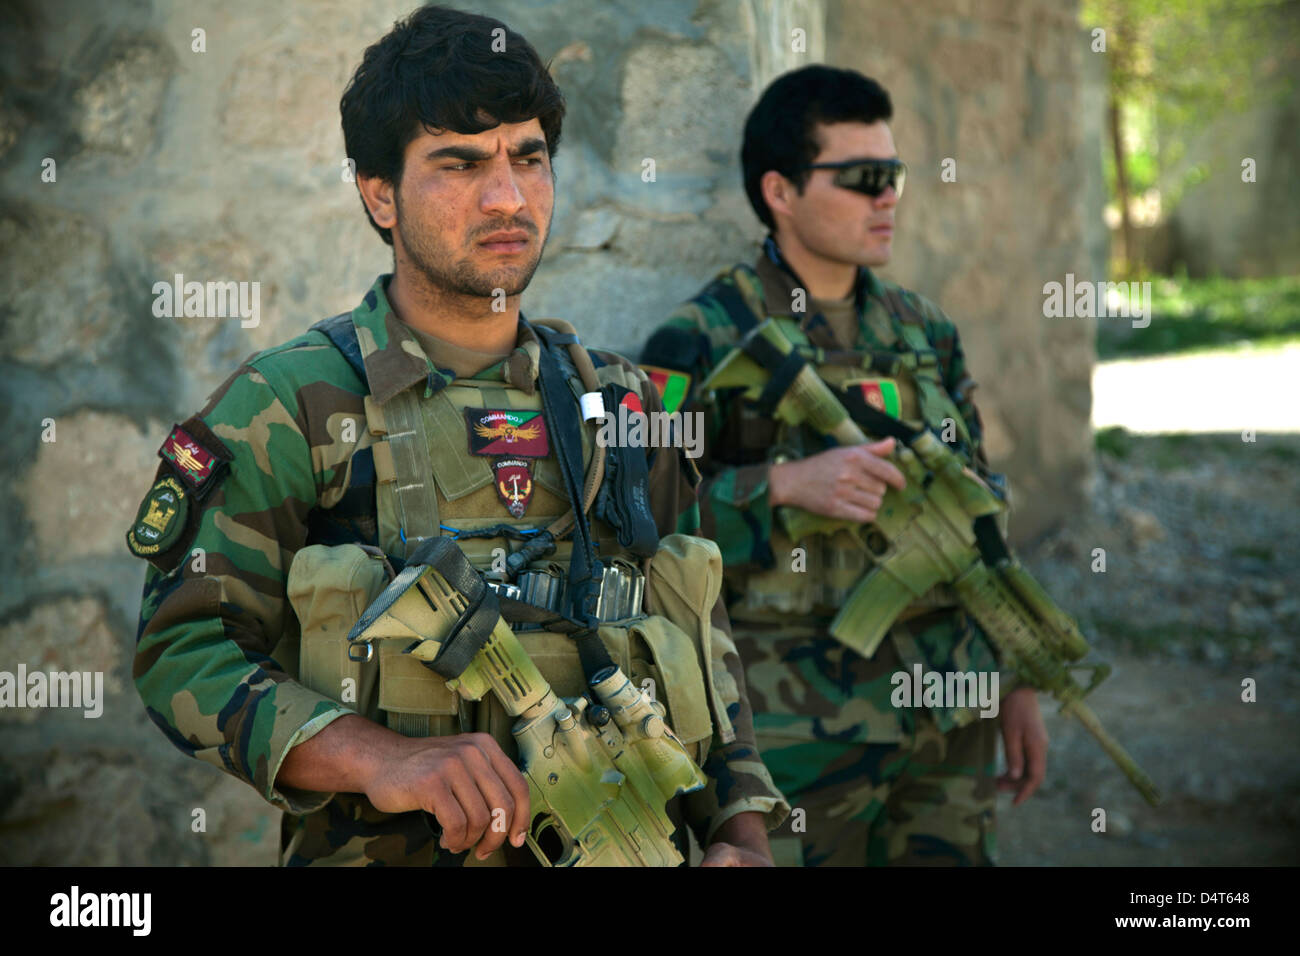 Un esercito nazionale afghano delle forze speciali commandos mantenere la sicurezza durante un afghano di polizia locale la convalida di assunzione Marzo 16, 2013 nella provincia di Helmand, Afghanistan. Foto Stock